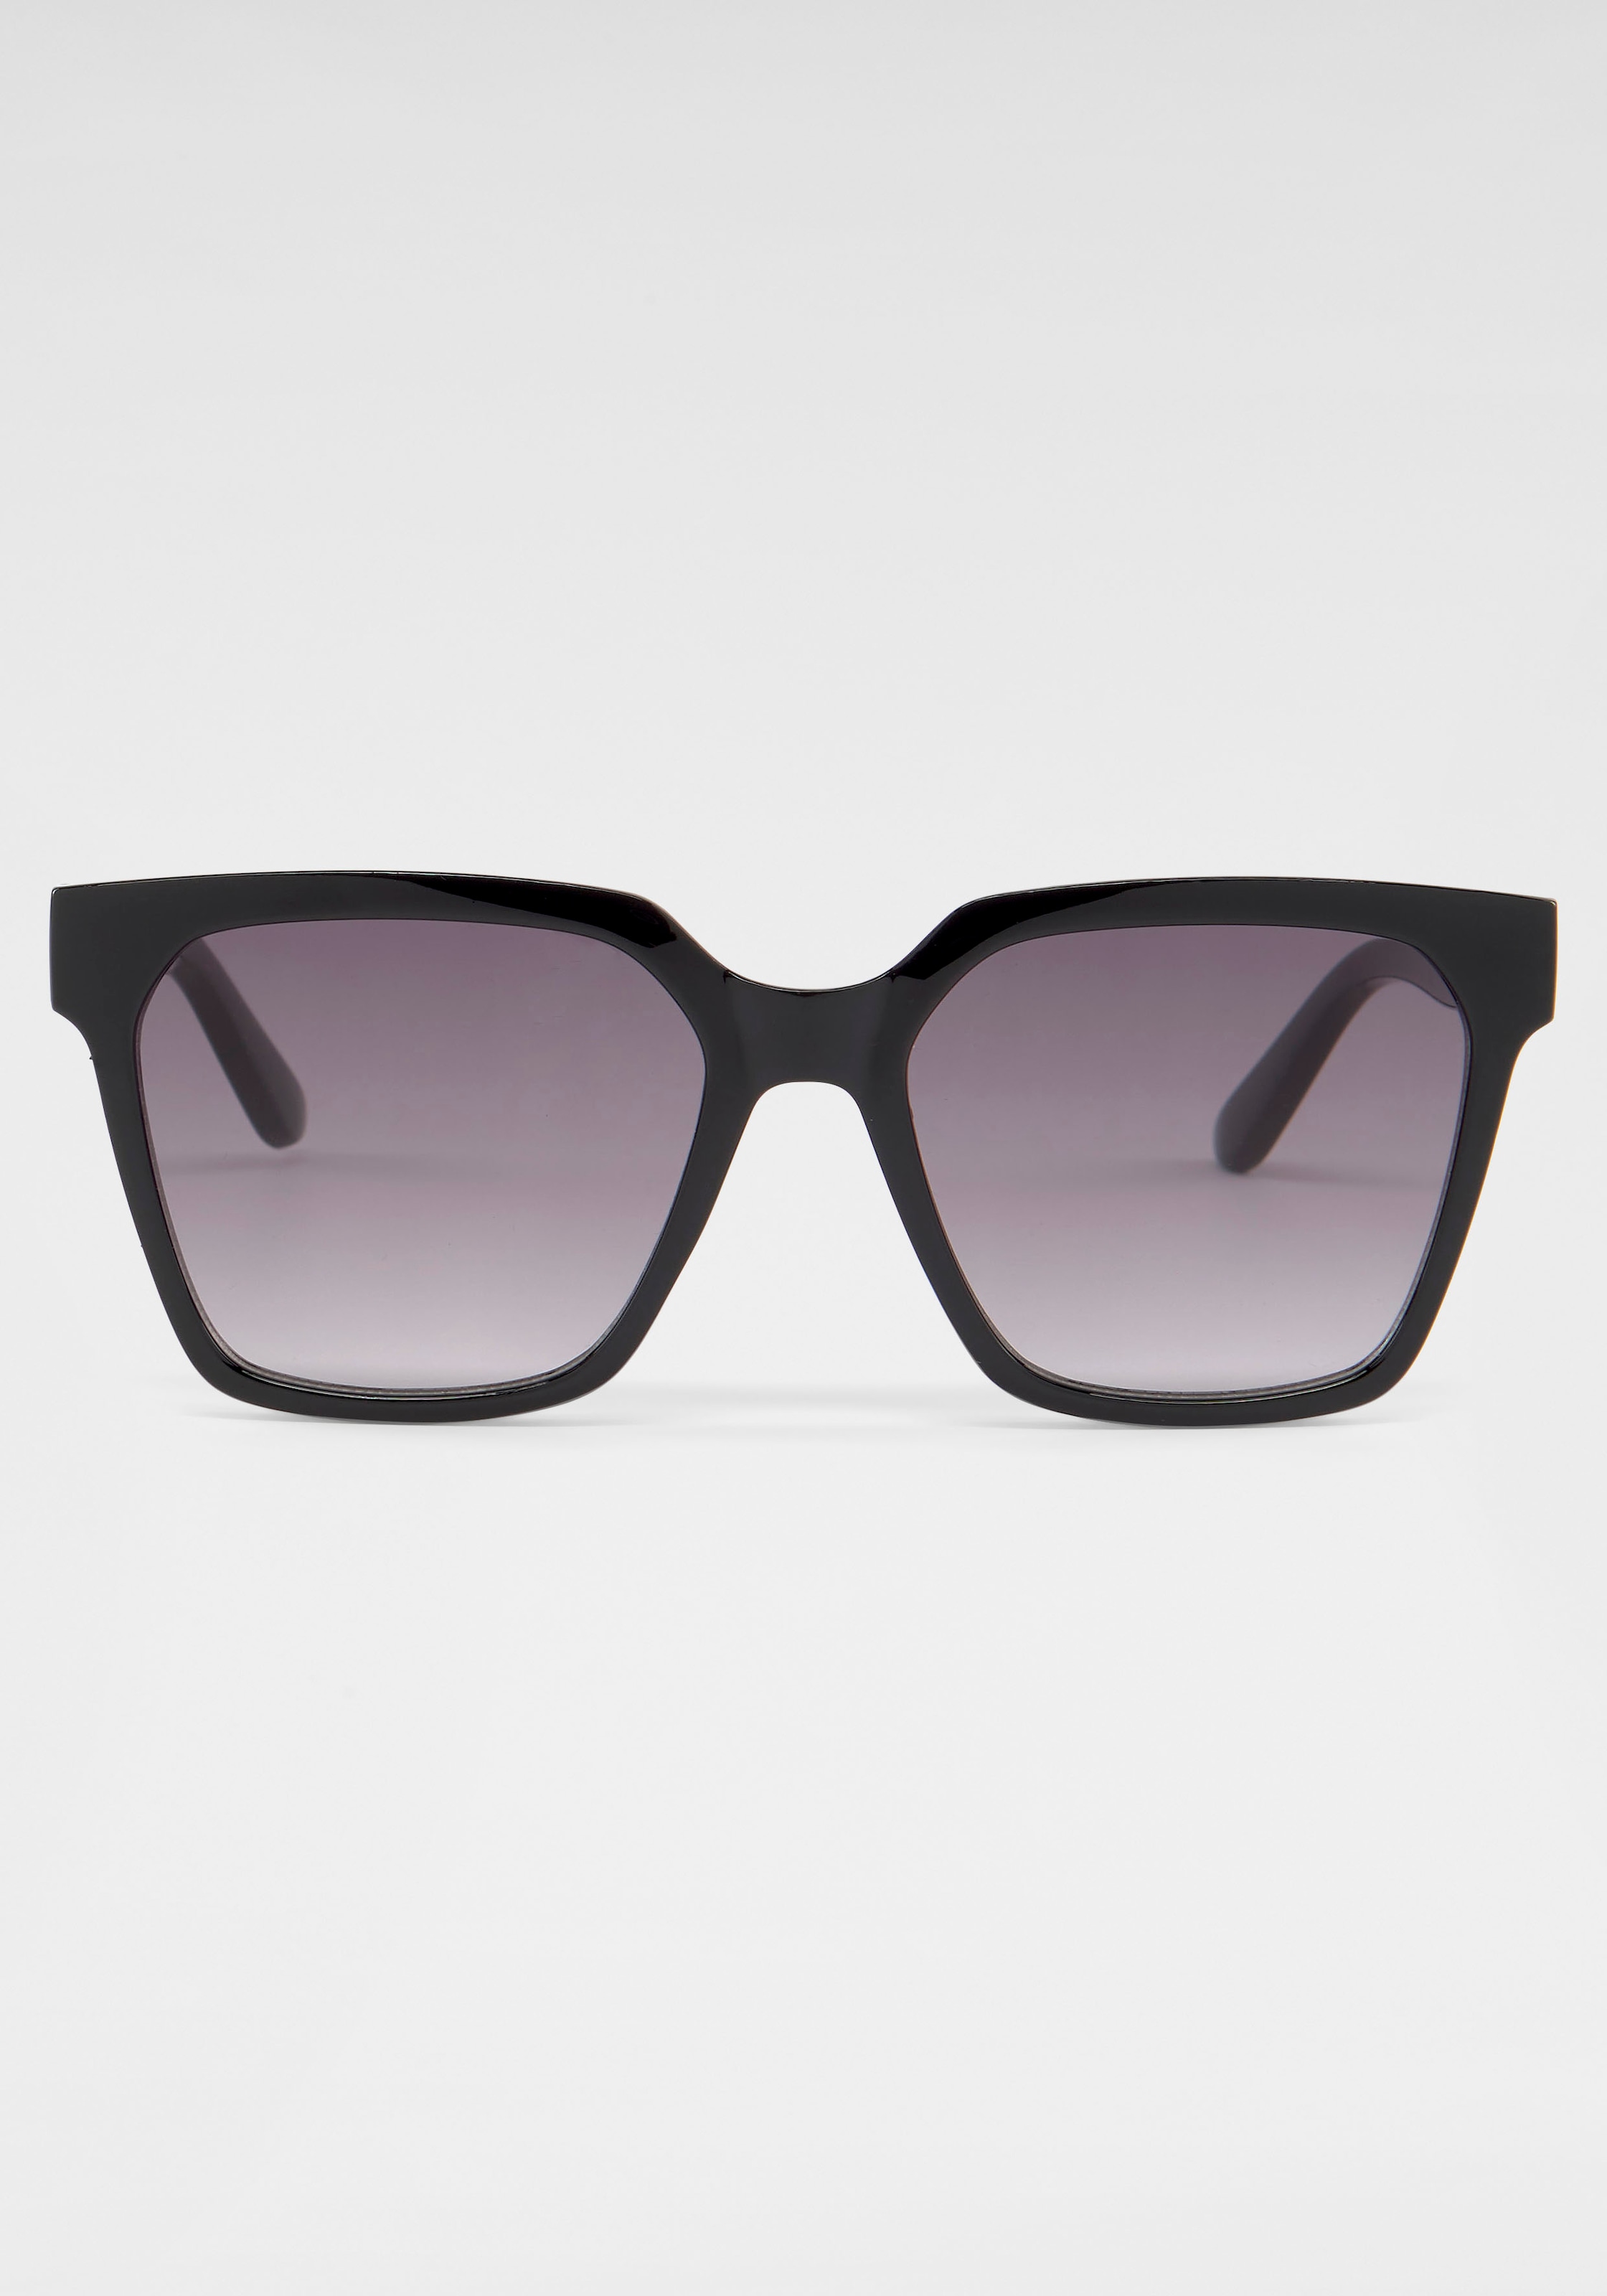 Eyewear online Retrosonnenbrille kaufen catwalk